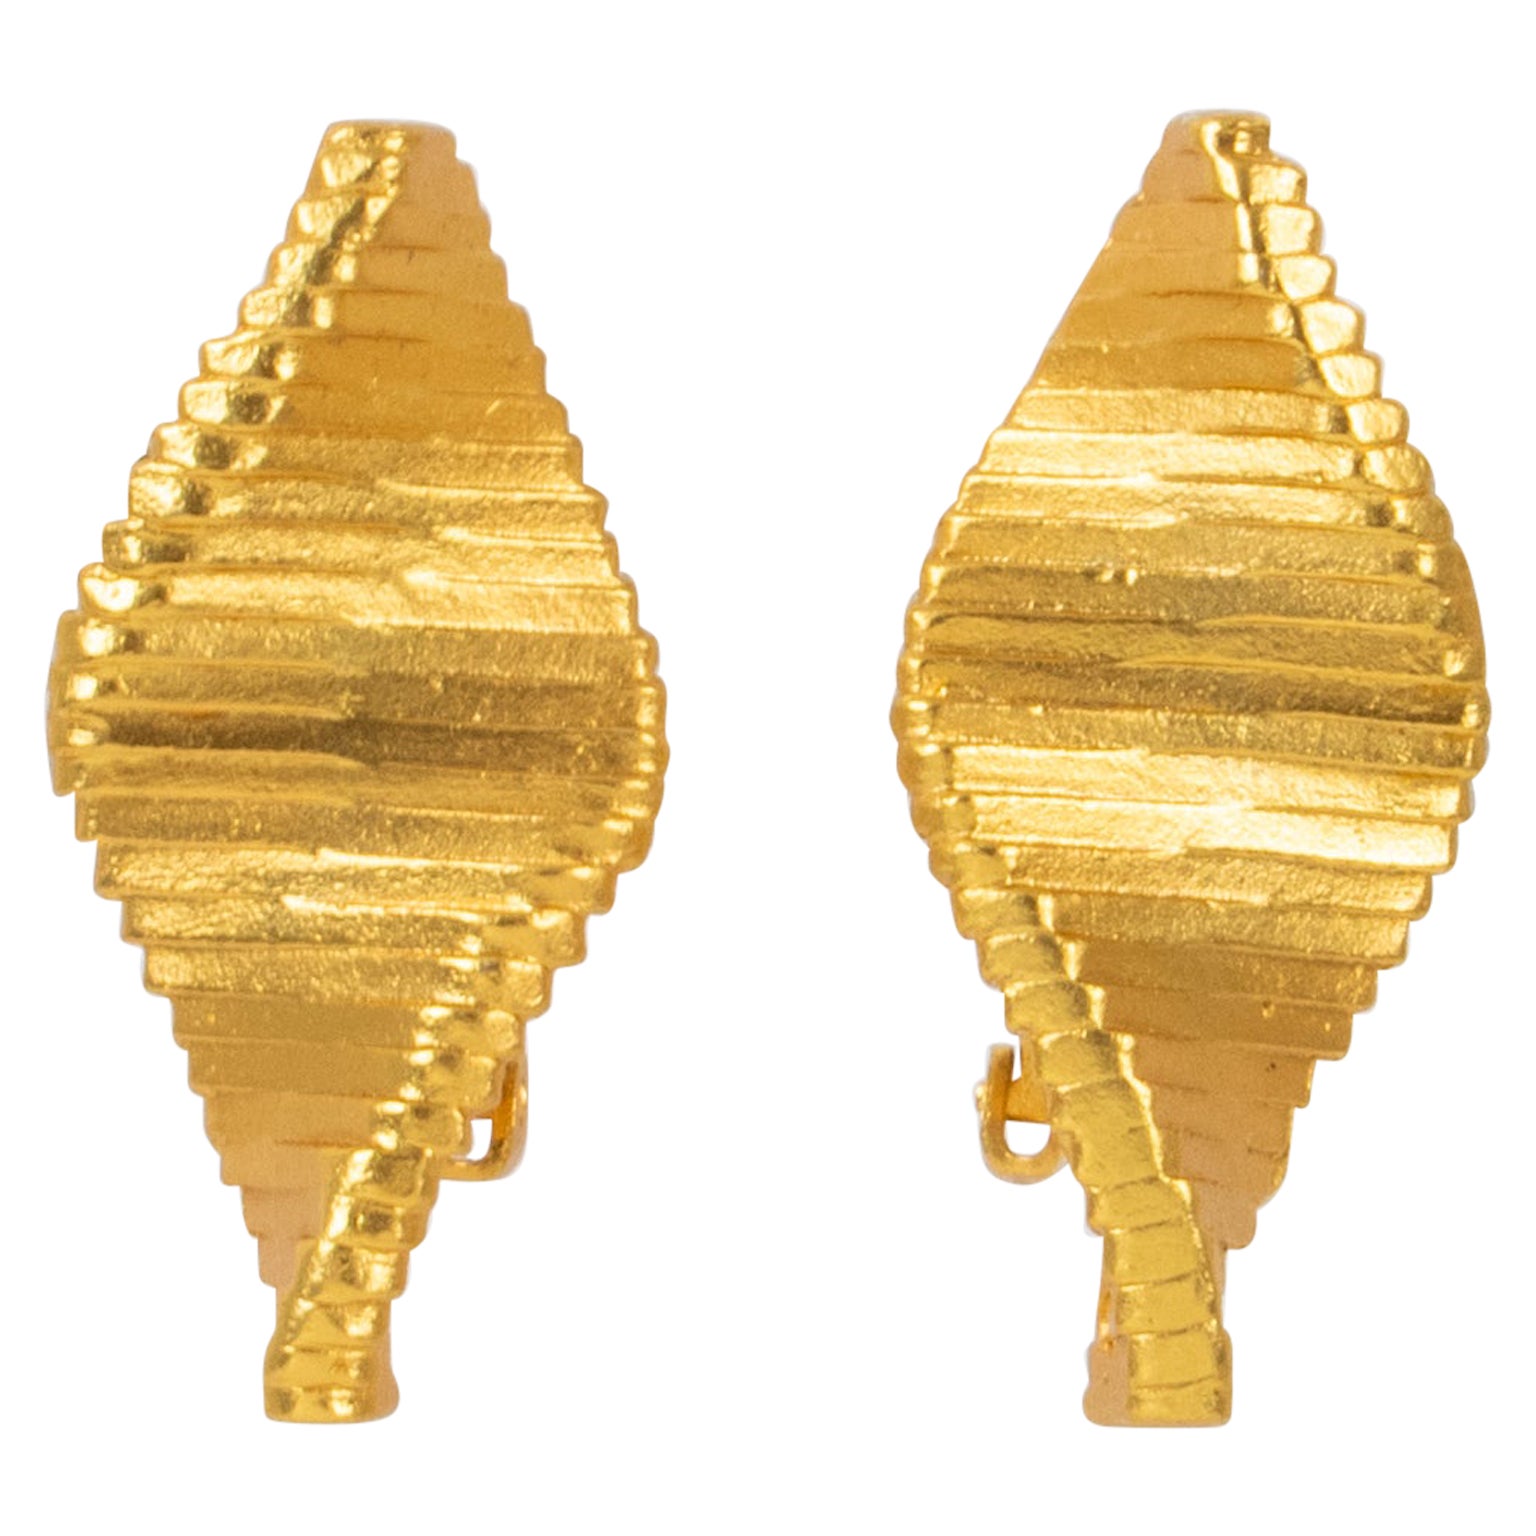 Claude Montana - Boucles d'oreilles clips en métal doré futuriste